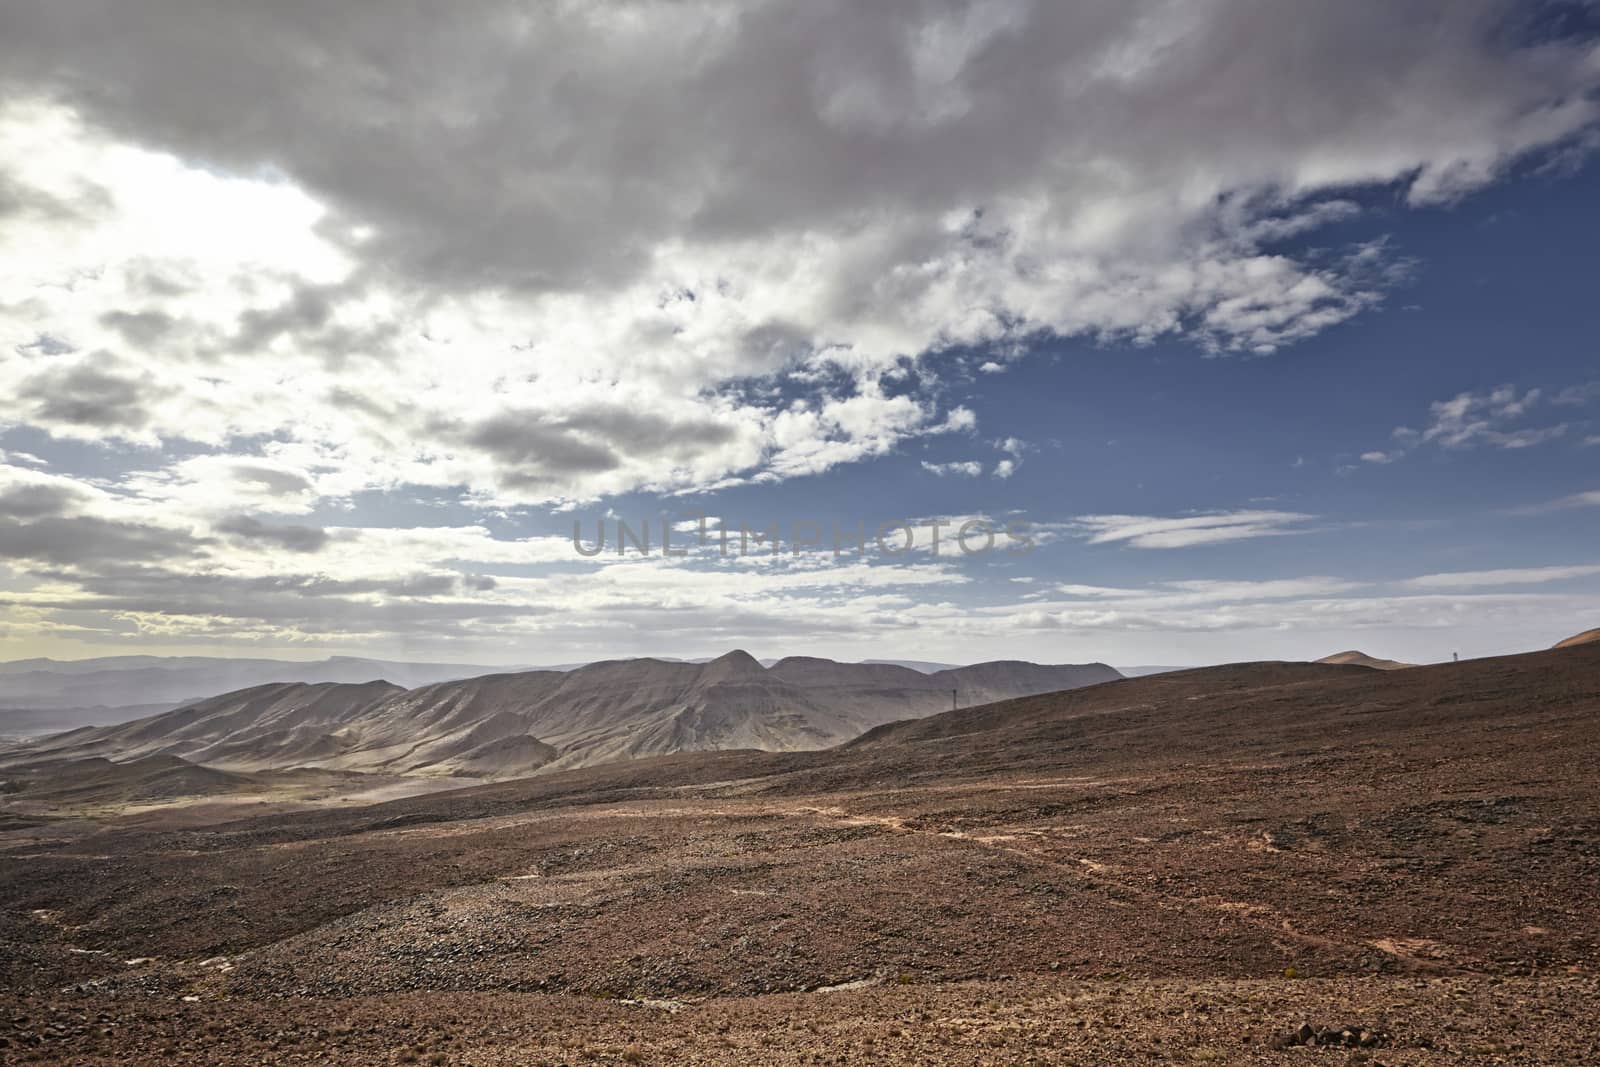 Desert mountain scenery. Moroccan desert scenic landscape